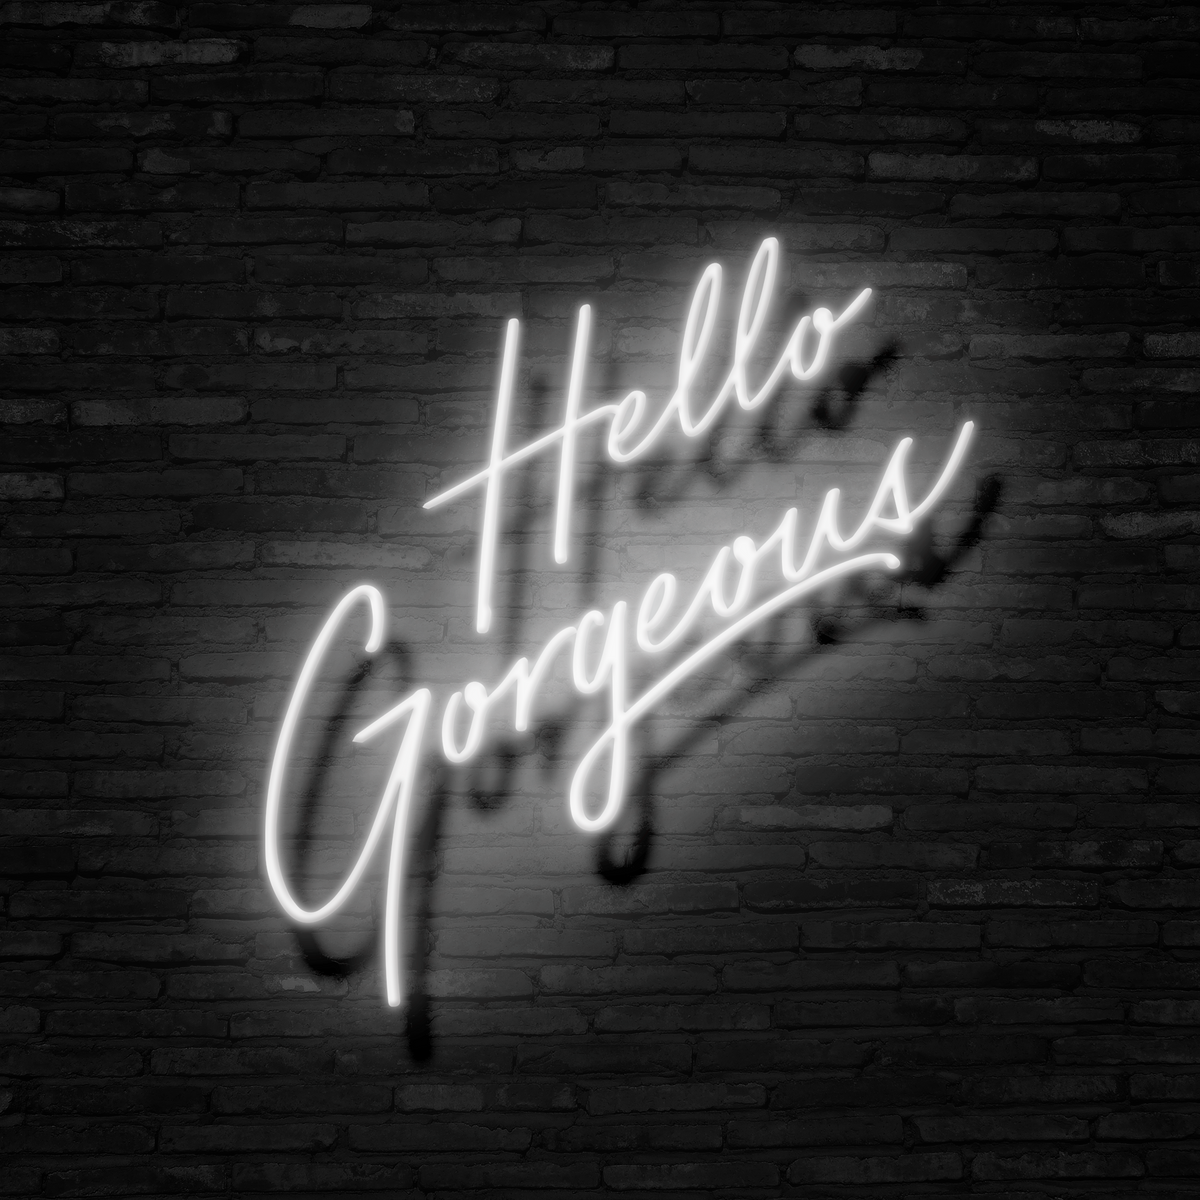 Hello Gorgeous - Neon Sign